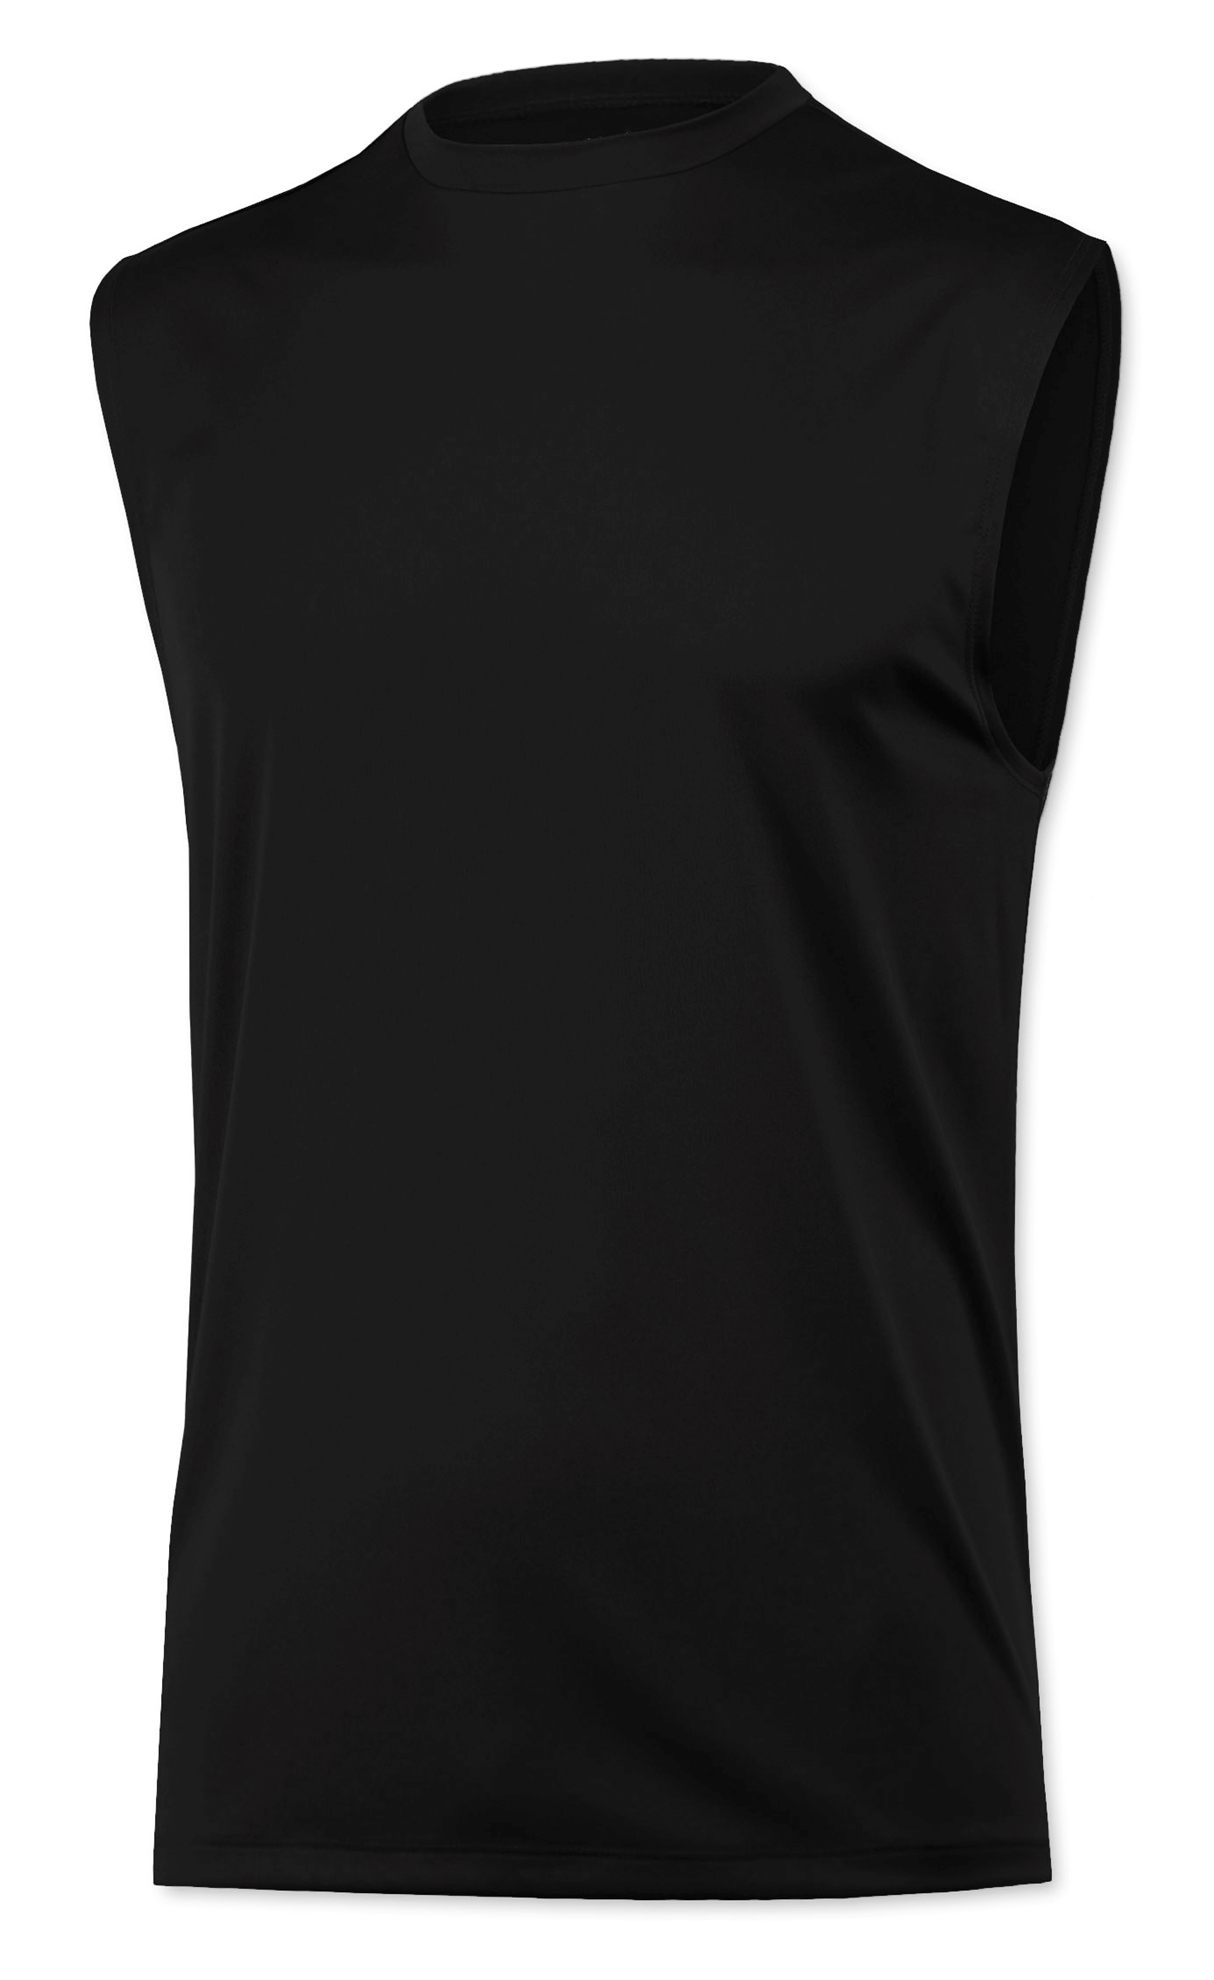 BAW Athletic Wear XT36 / XT36H - Men's Xtreme-Tek Sleeveless